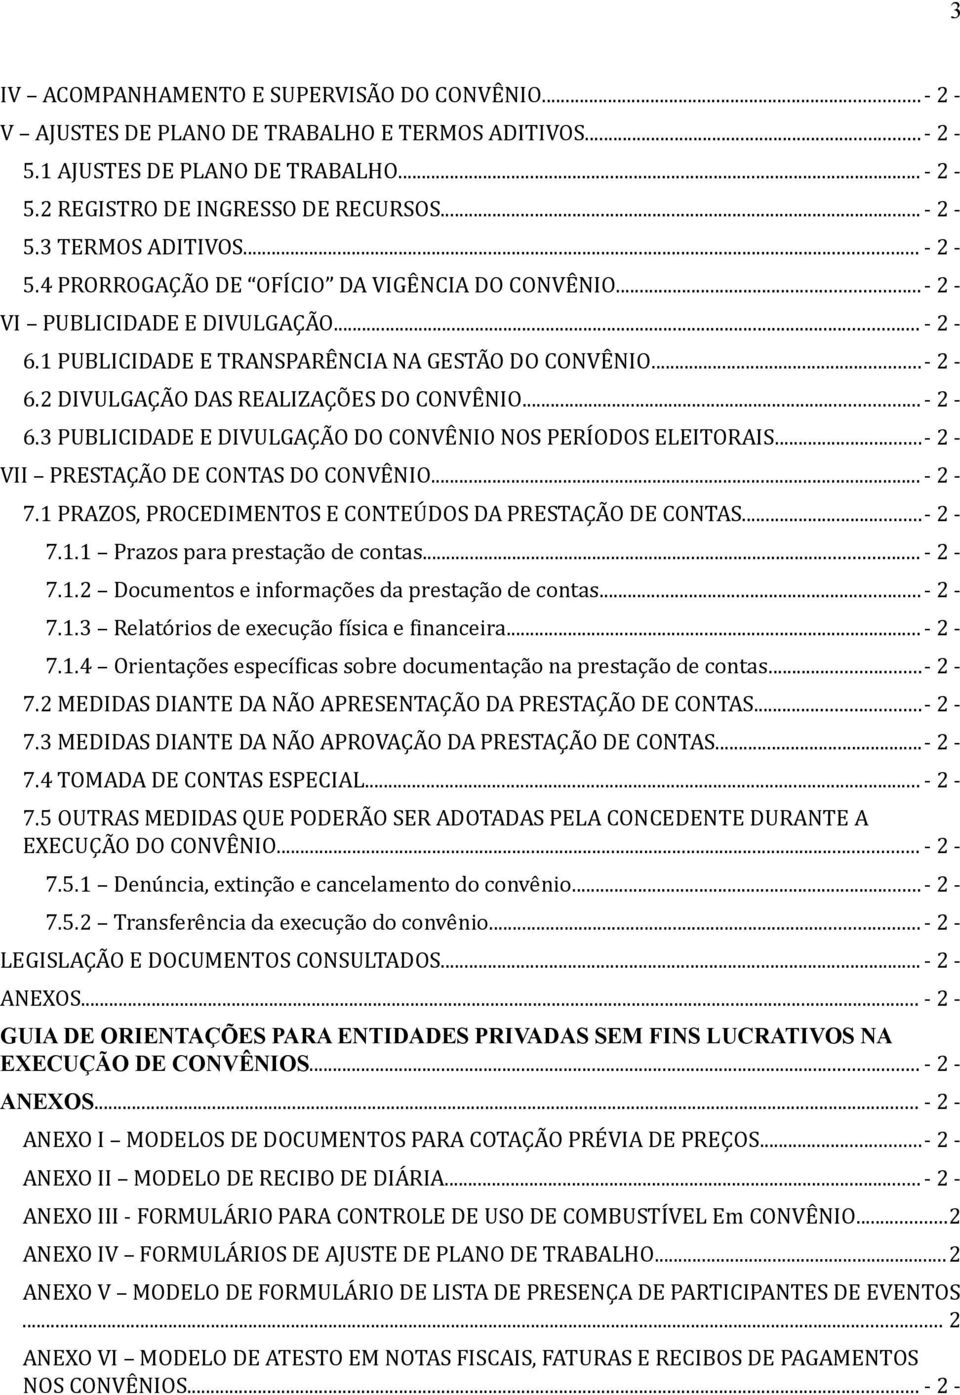 ..- 2-6.3 PUBLICIDADE E DIVULGAÇÃO DO CONVÊNIO NOS PERÍODOS ELEITORAIS...- 2 - VII PRESTAÇÃO DE CONTAS DO CONVÊNIO... - 2-7.1 PRAZOS, PROCEDIMENTOS E CONTEÚDOS DA PRESTAÇÃO DE CONTAS...- 2-7.1.1 Prazos para prestação de contas.